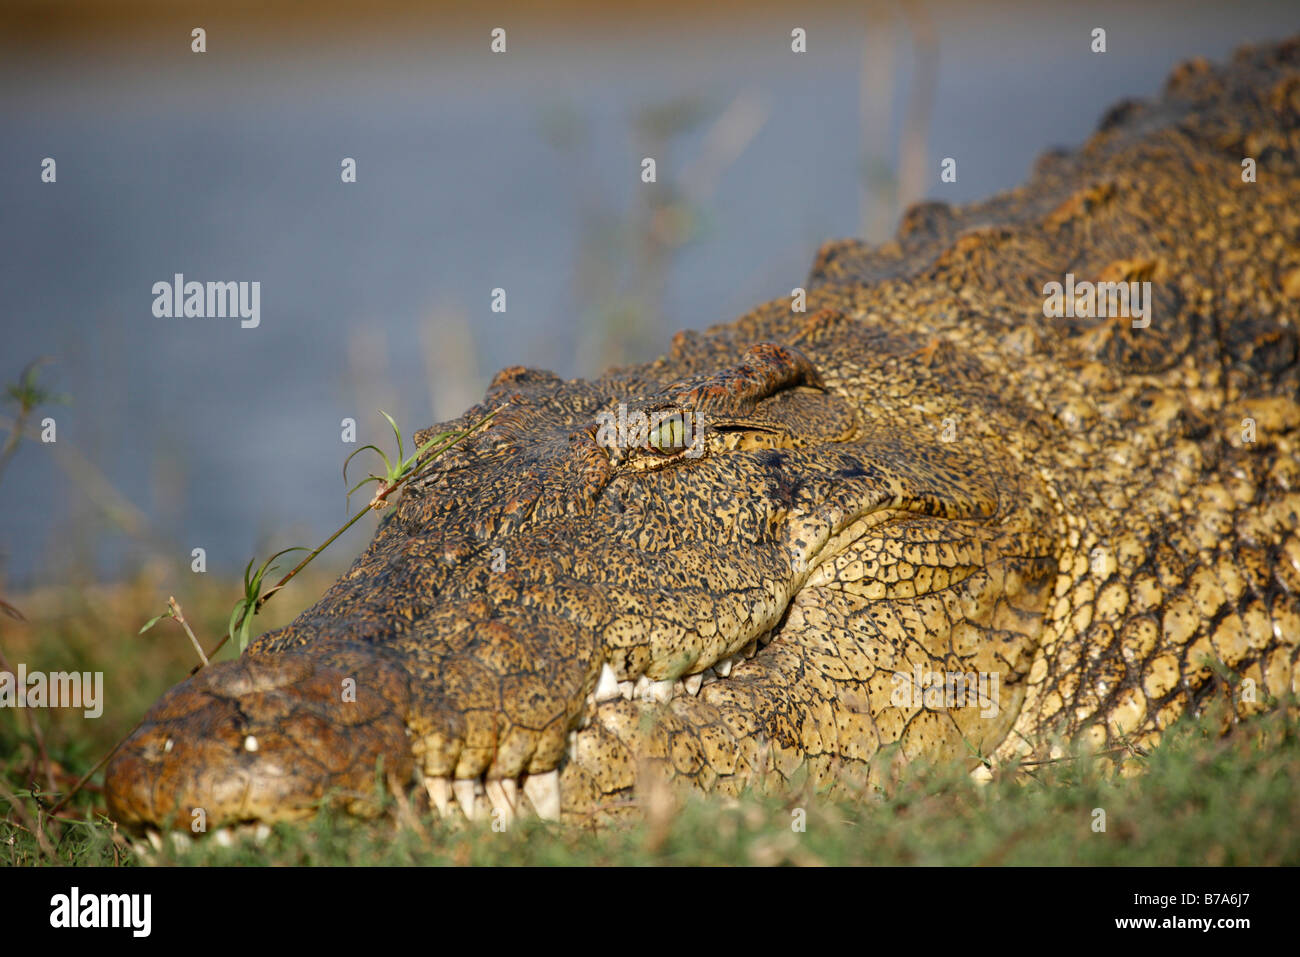 Retrato de un cocodrilo del Nilo insolación Foto de stock